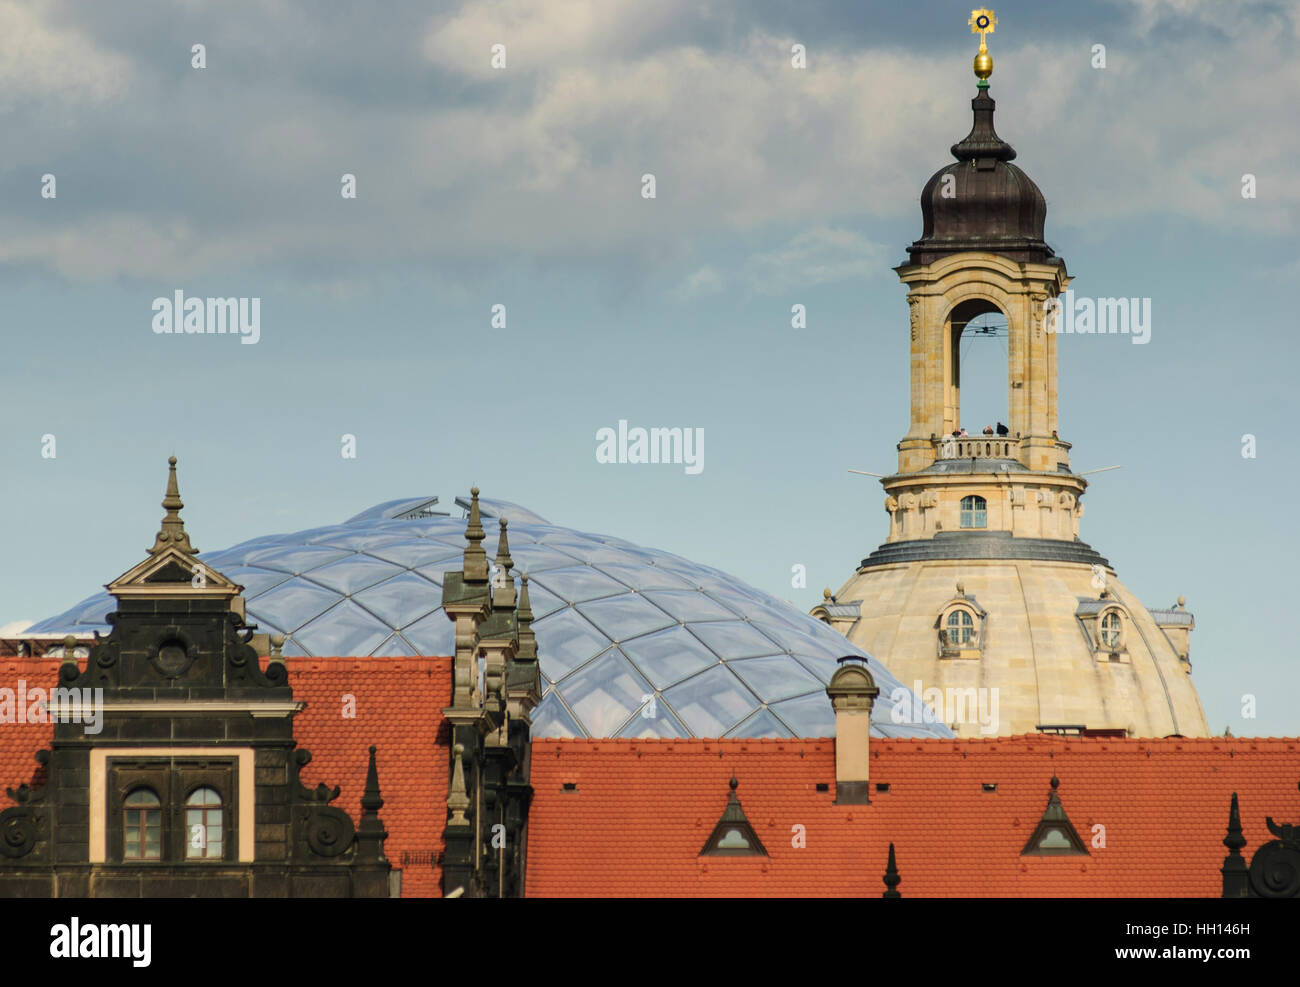 Dresden: Kuppel der Frauenkirche mit Aussichtsplattform und klare Multicolor-Membrandach über den kleinen Schloss Hof, Sachsen, Sachsen, Deutschland Stockfoto